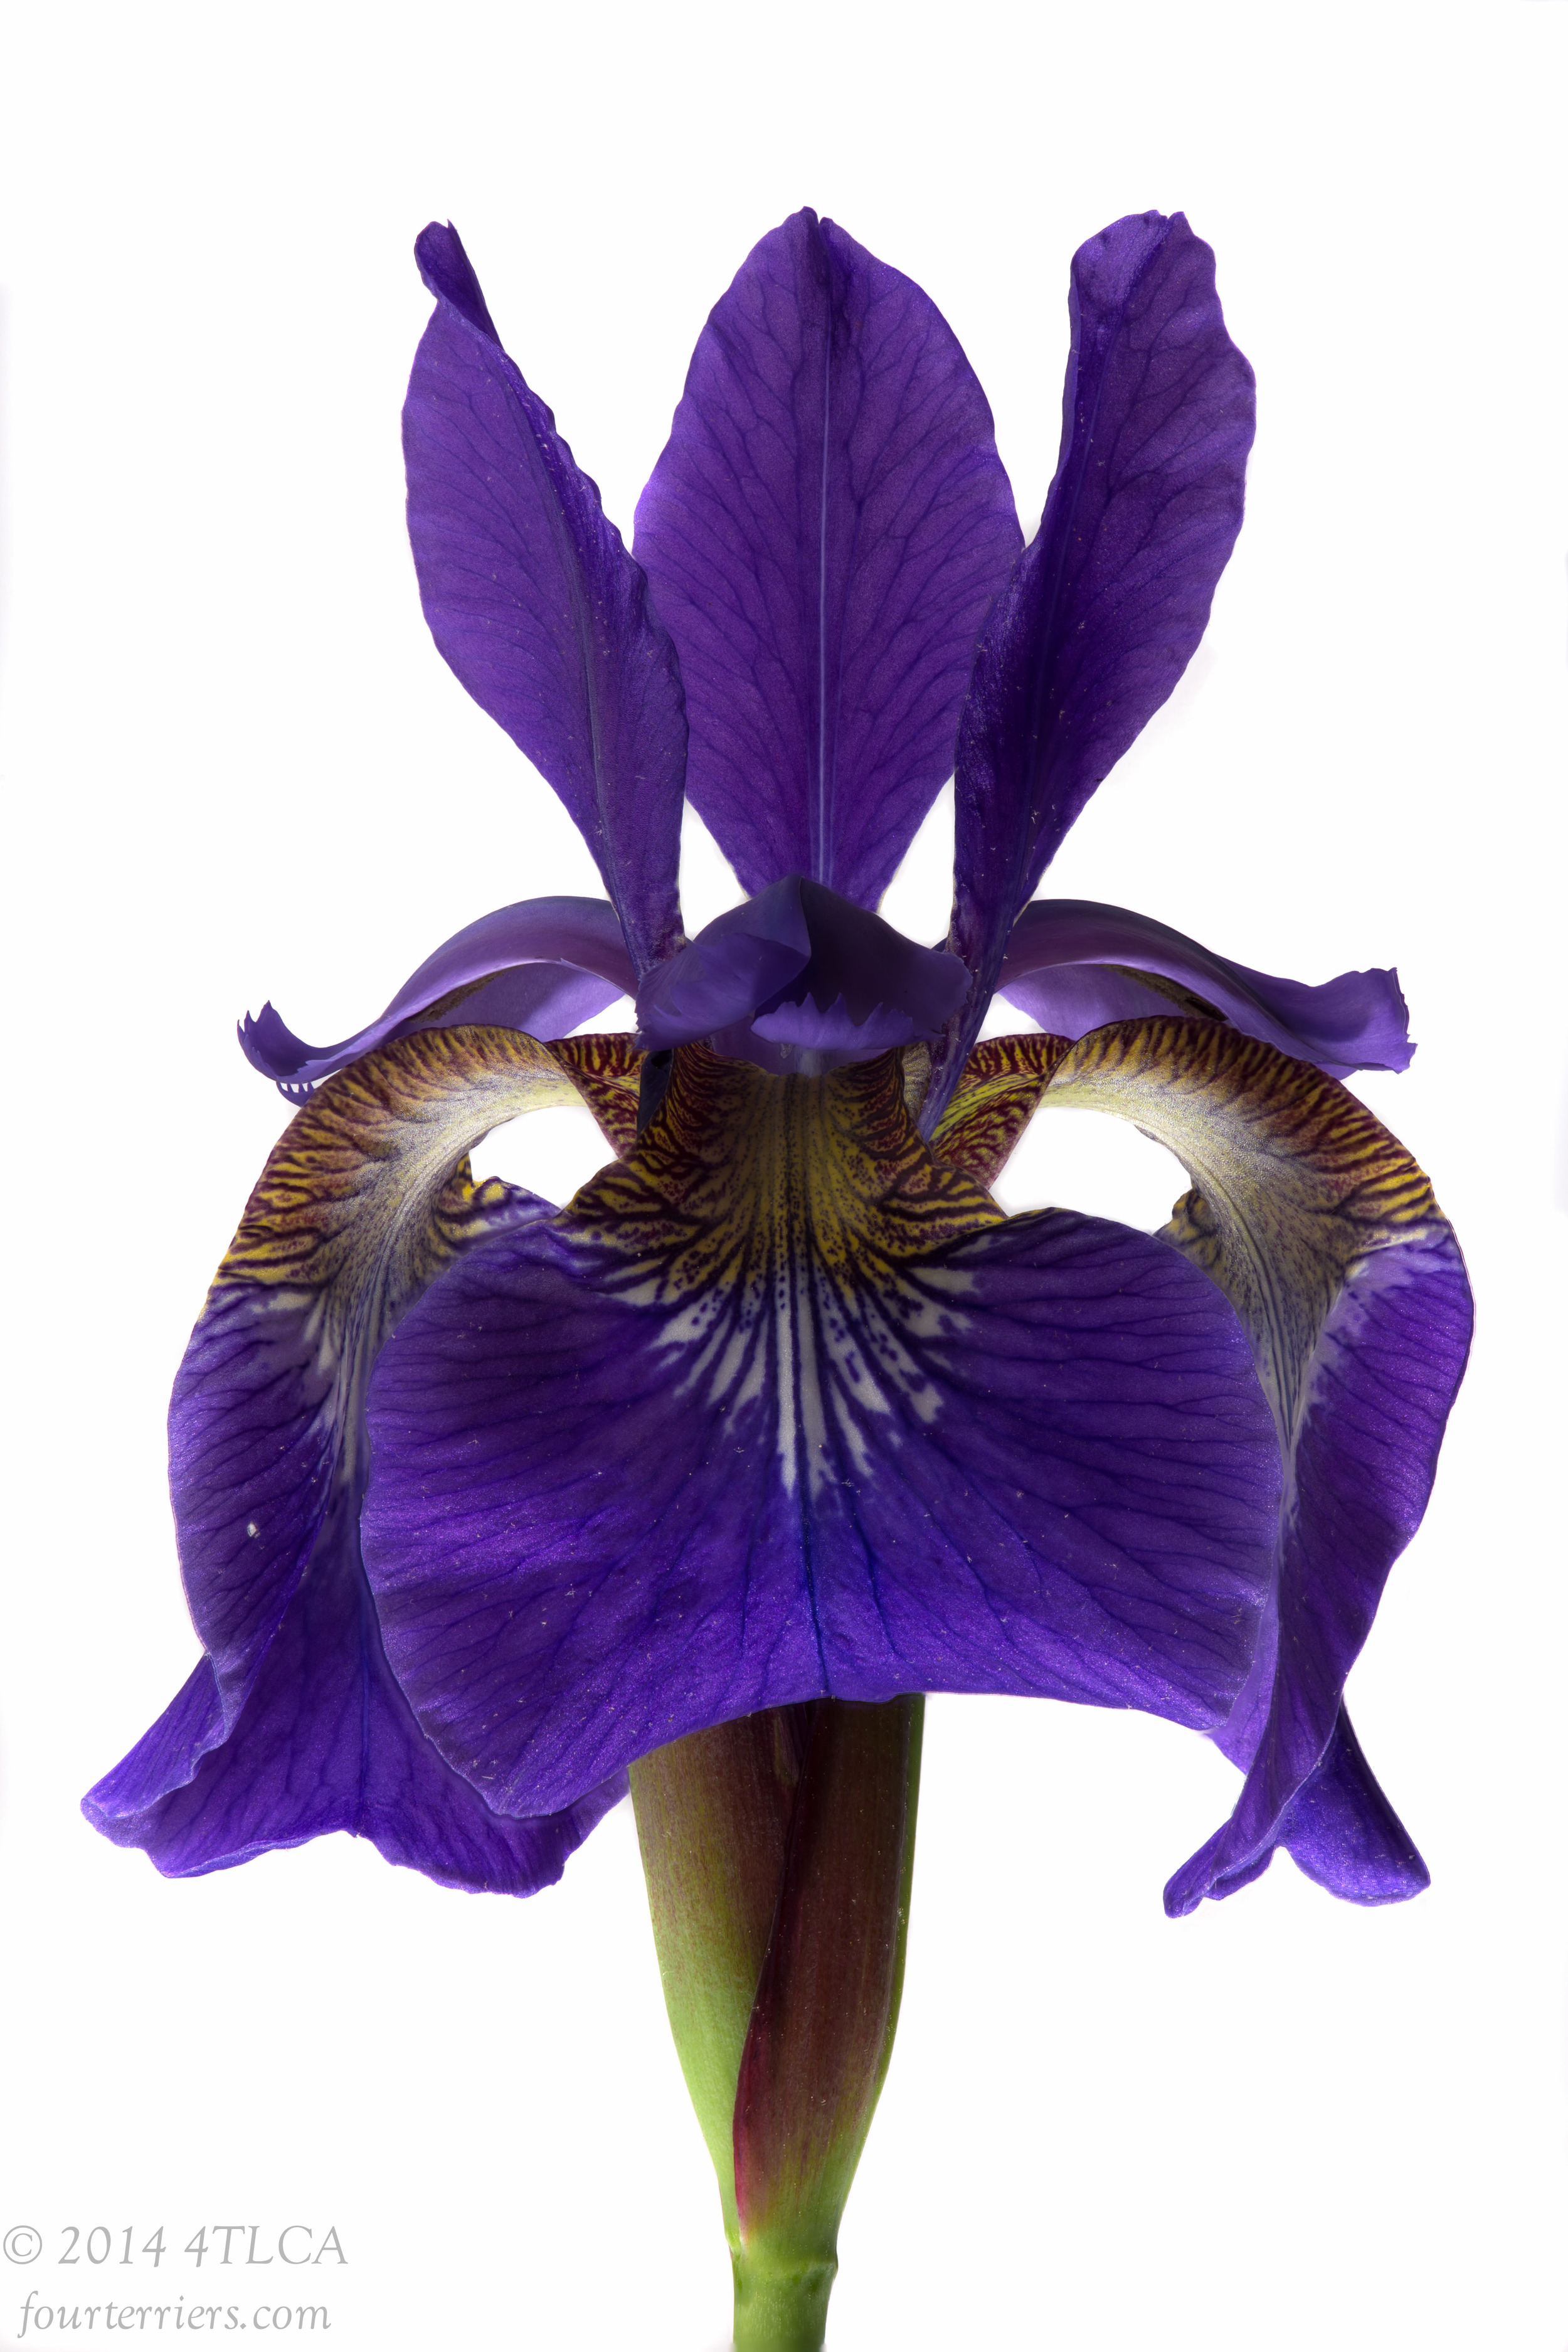 Purple Iris 2, 2014